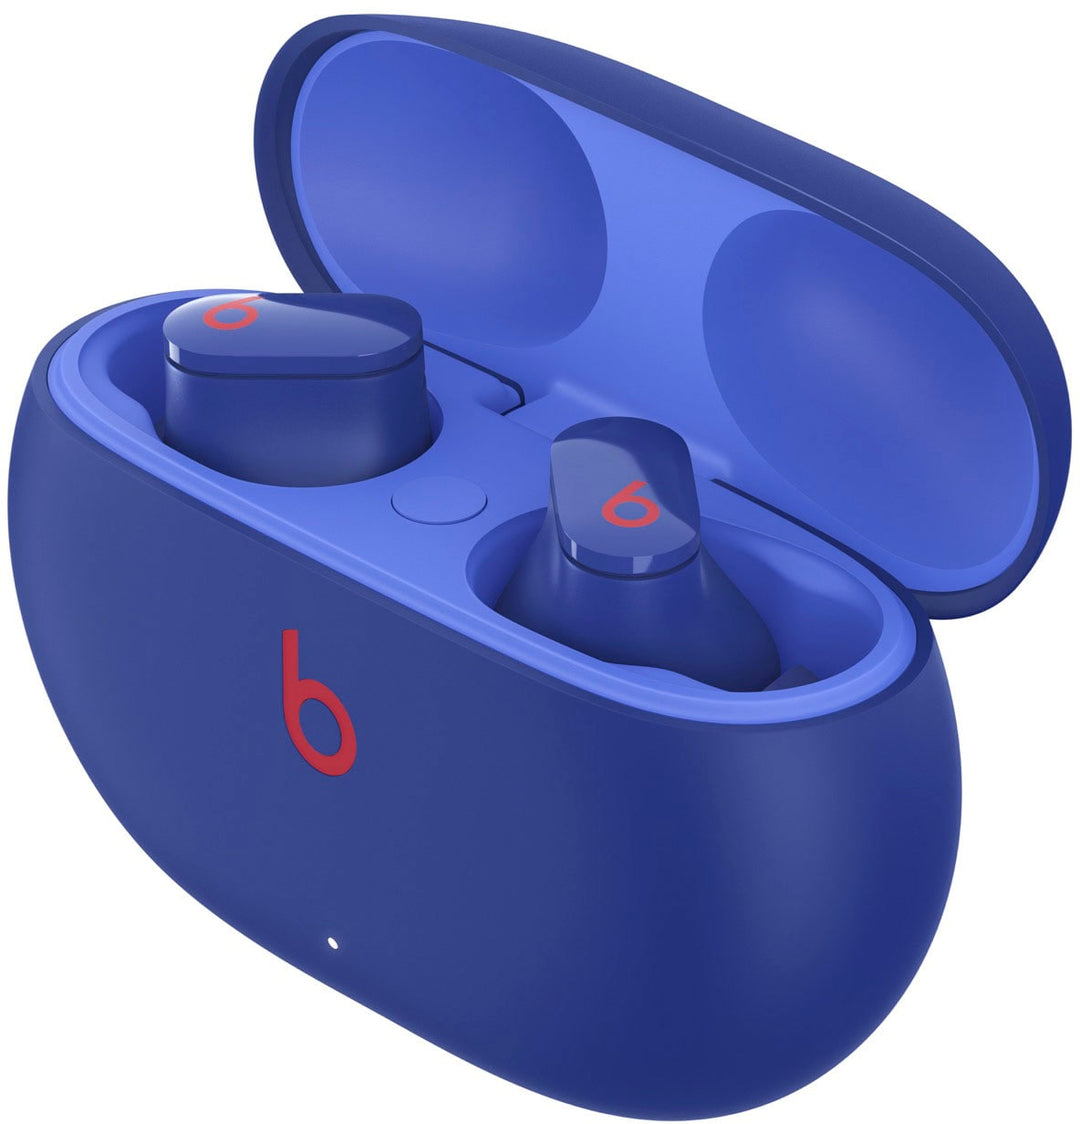 Beats by Dr. Dre - Beats Studio Buds True Wireless Noise Cancelling Earbuds - Ocean Blue_7